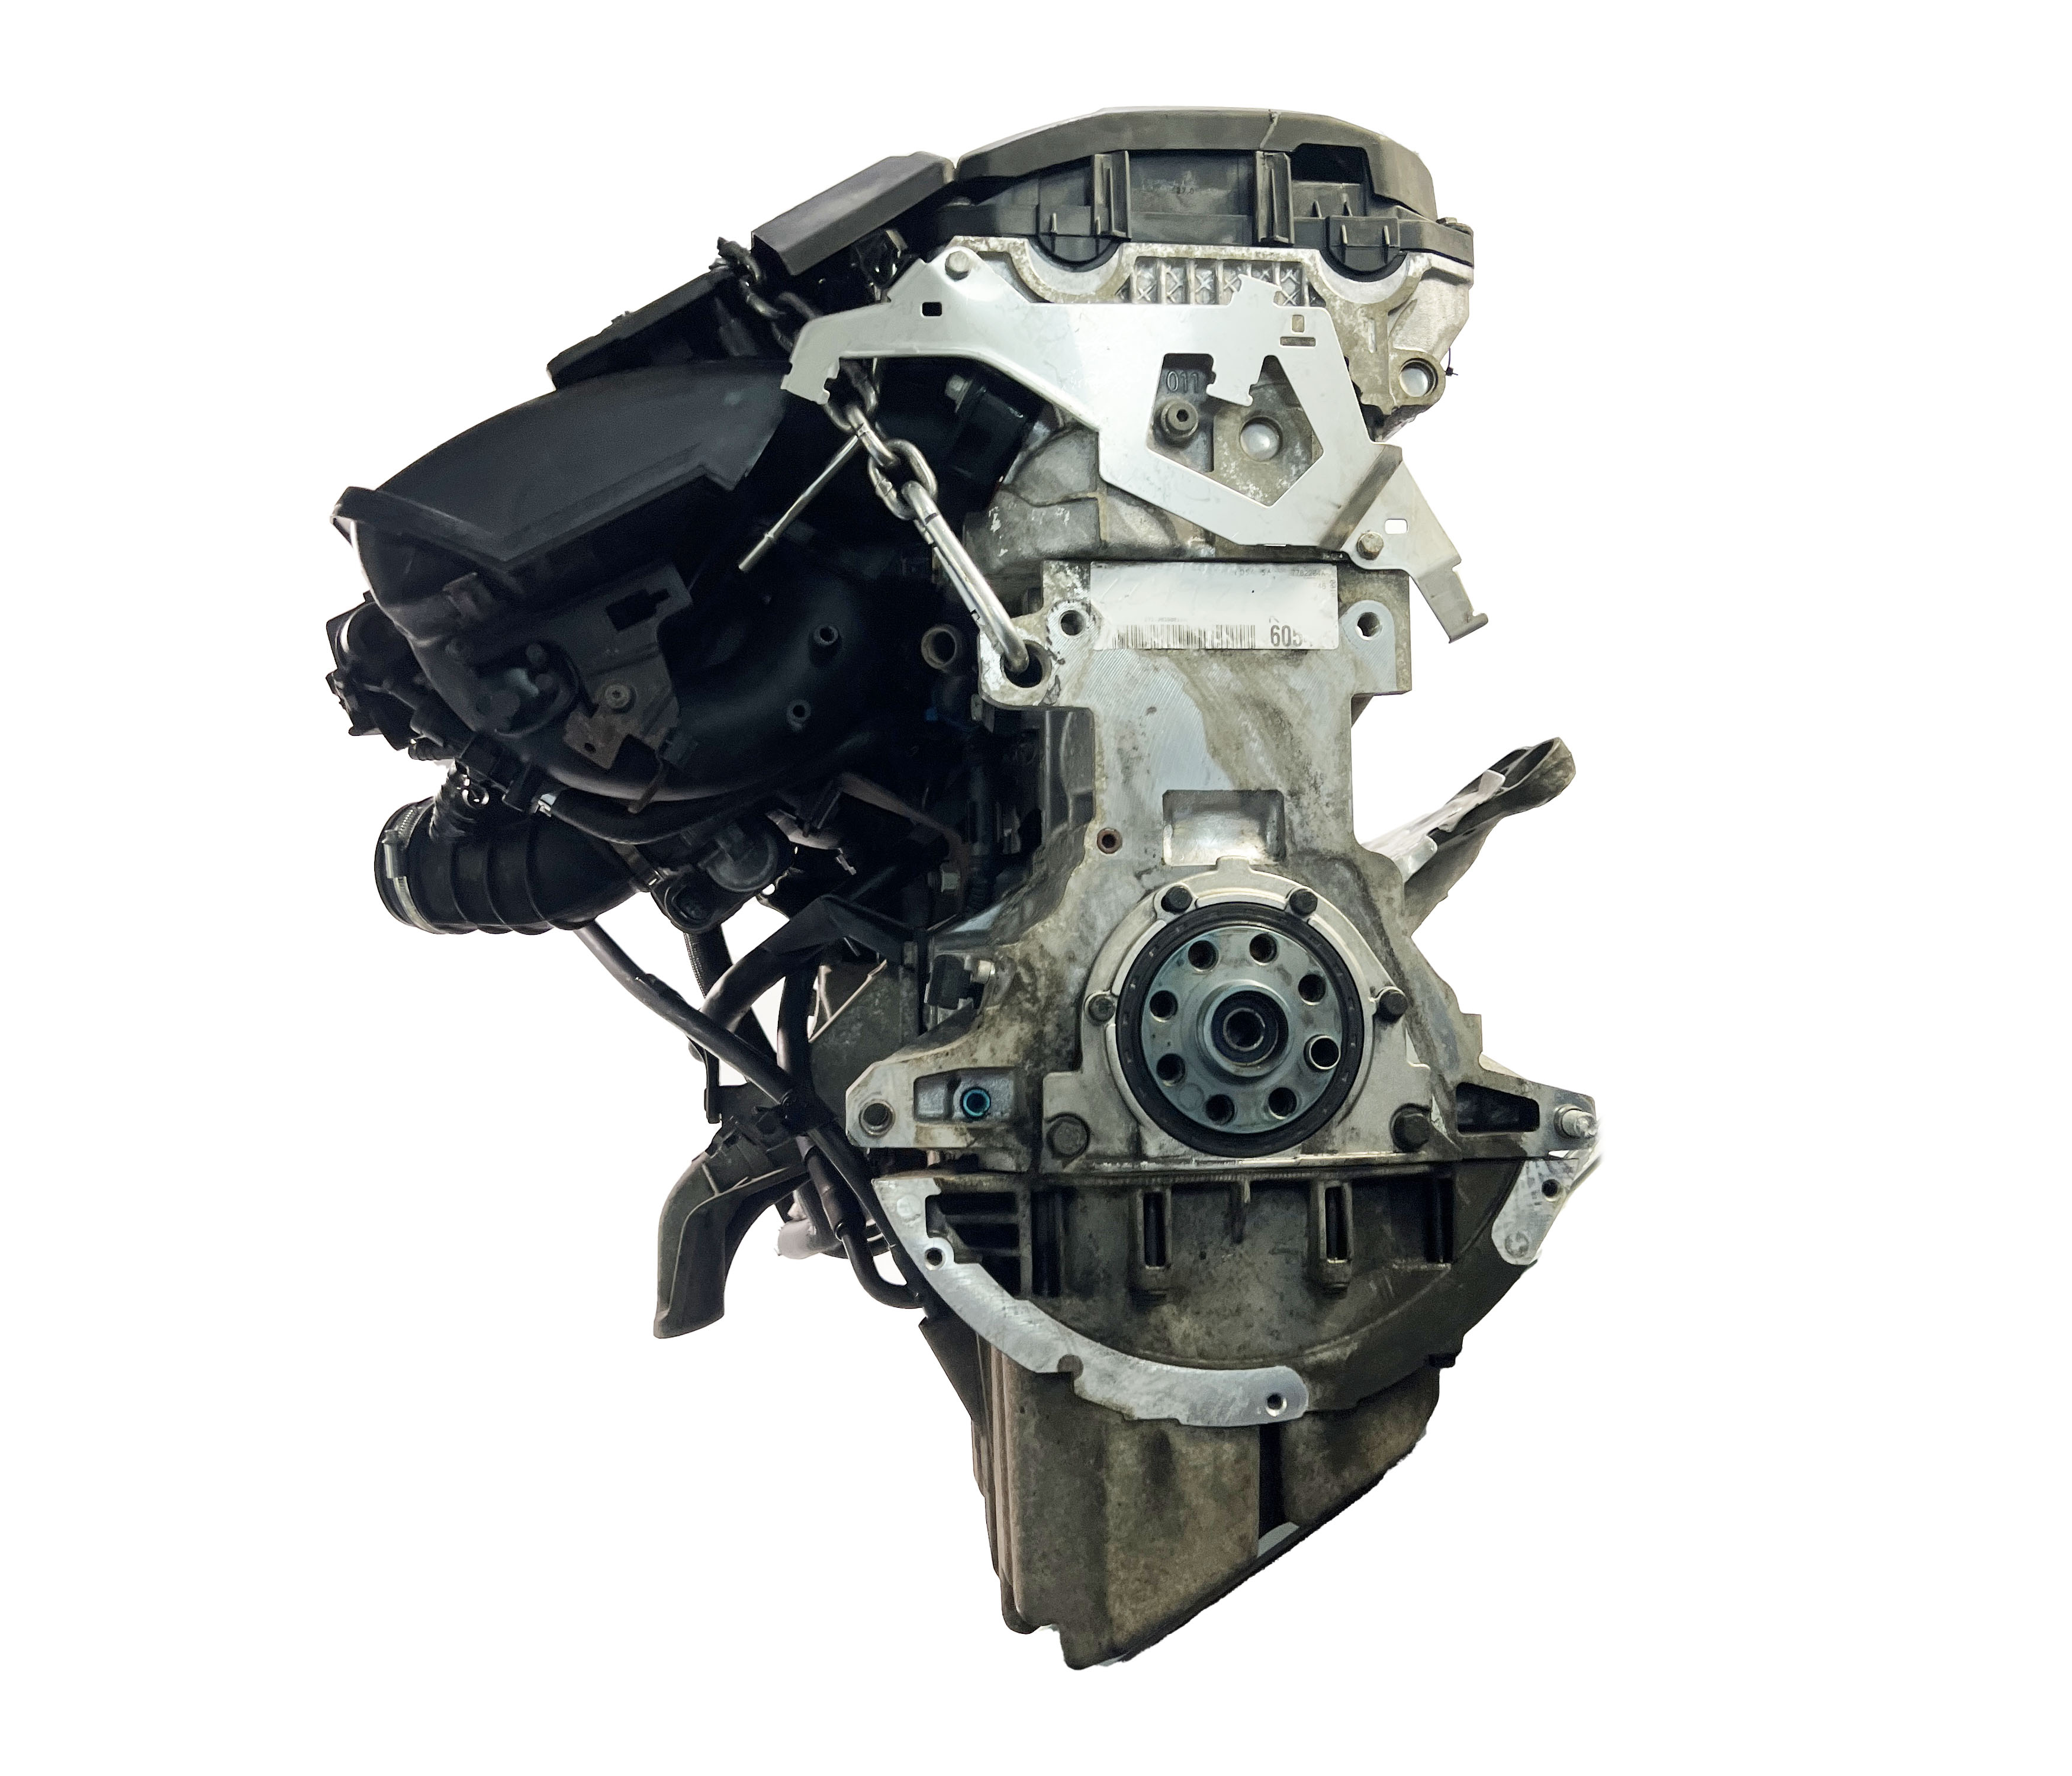 Engine for BMW 3 series E46 320 Ci i 2.2 gasoline 226S1 M54B22 M54  11007506886